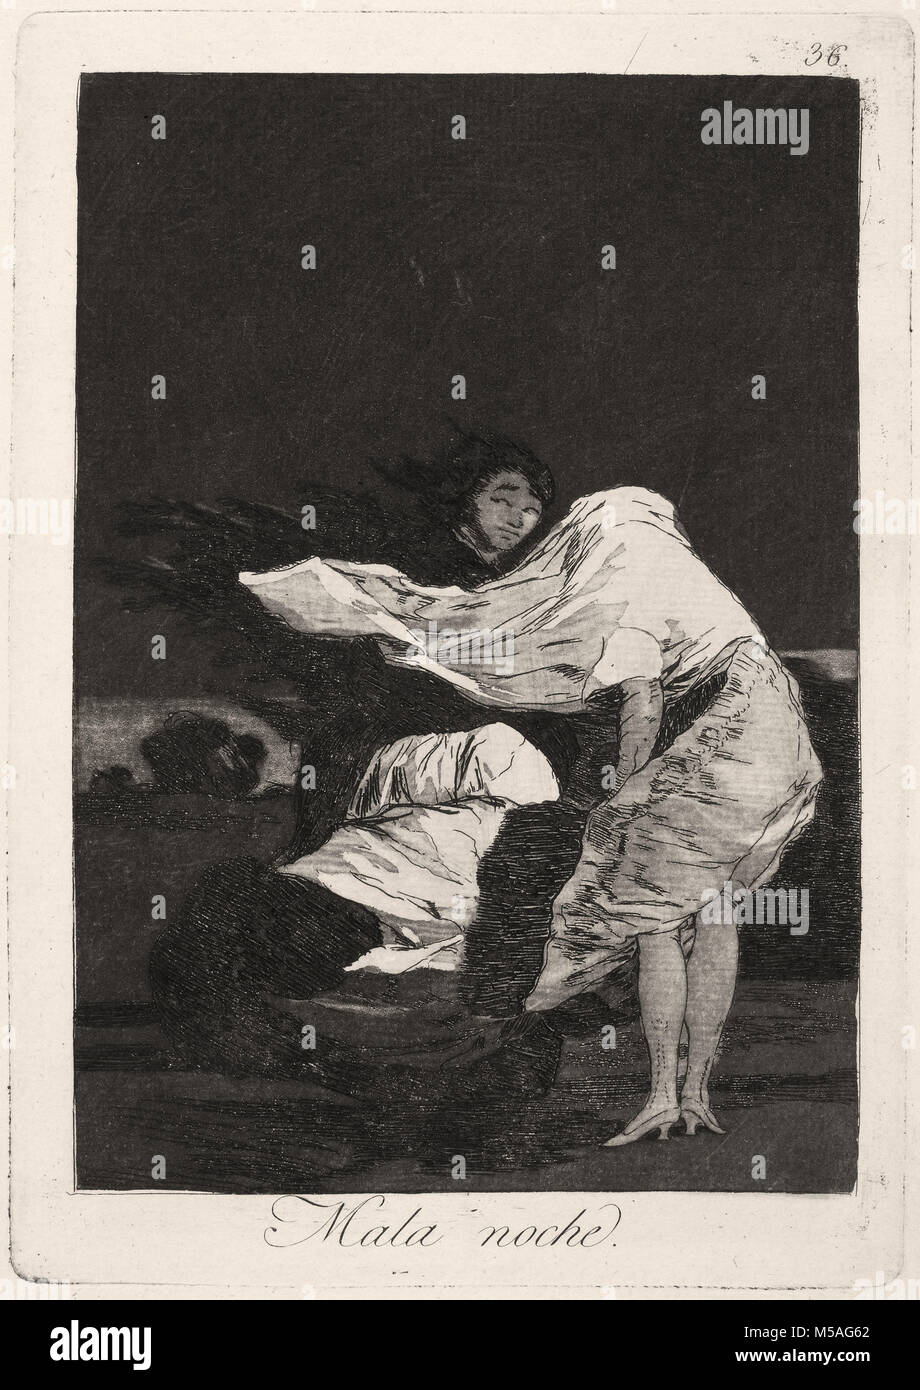 Francisco de Goya - Los Caprichos - No. 36 - Mala noche Stock Photo